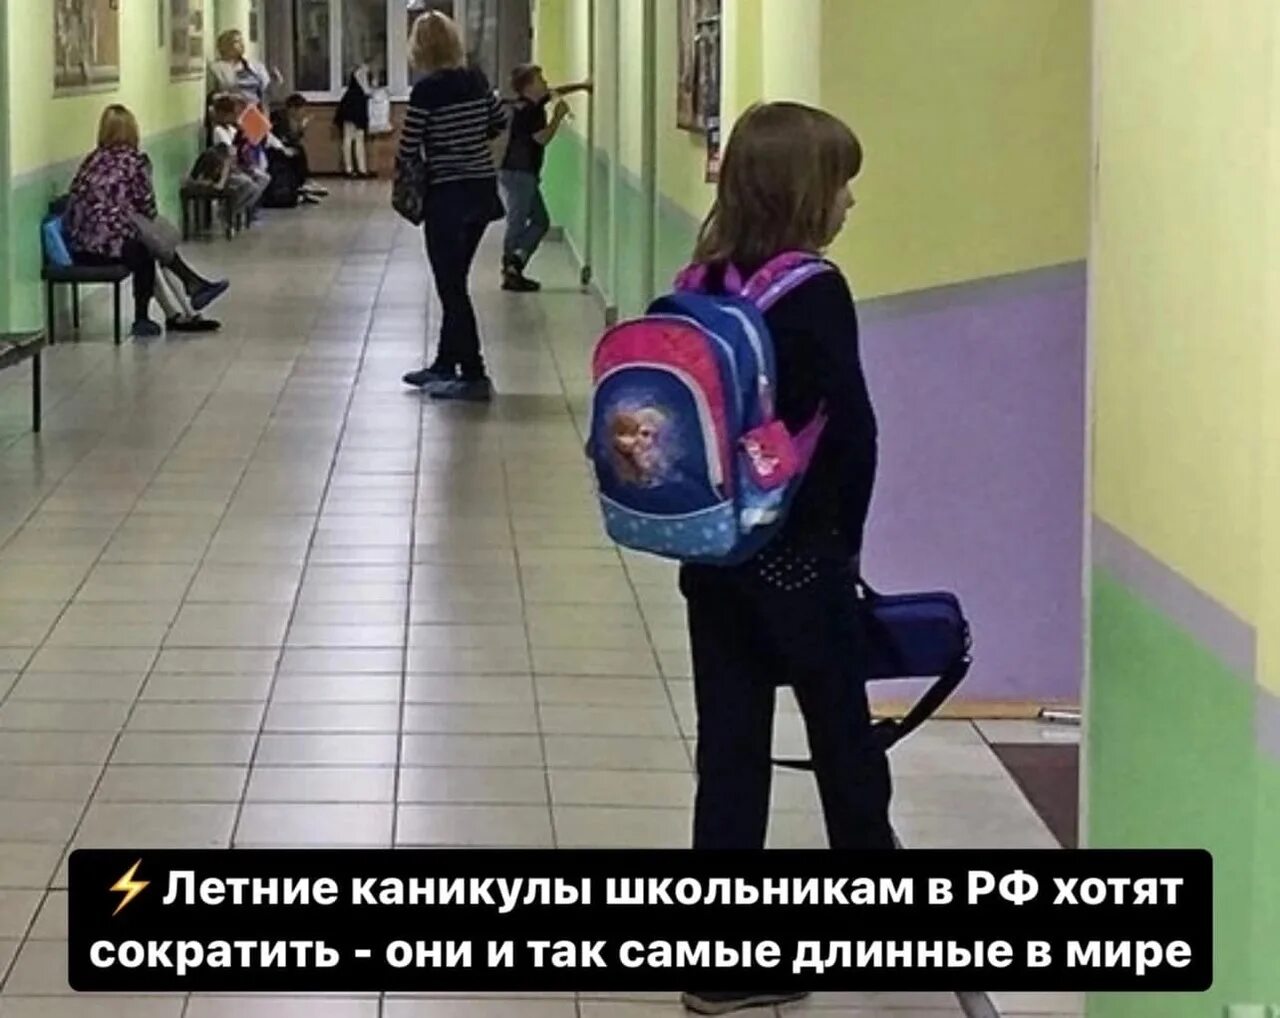 Картинки каникул школьников в России. Хотят сократить летние каникулы у школьников. Самые длинные каникулы в России. Самые длинные каникулы в мире.